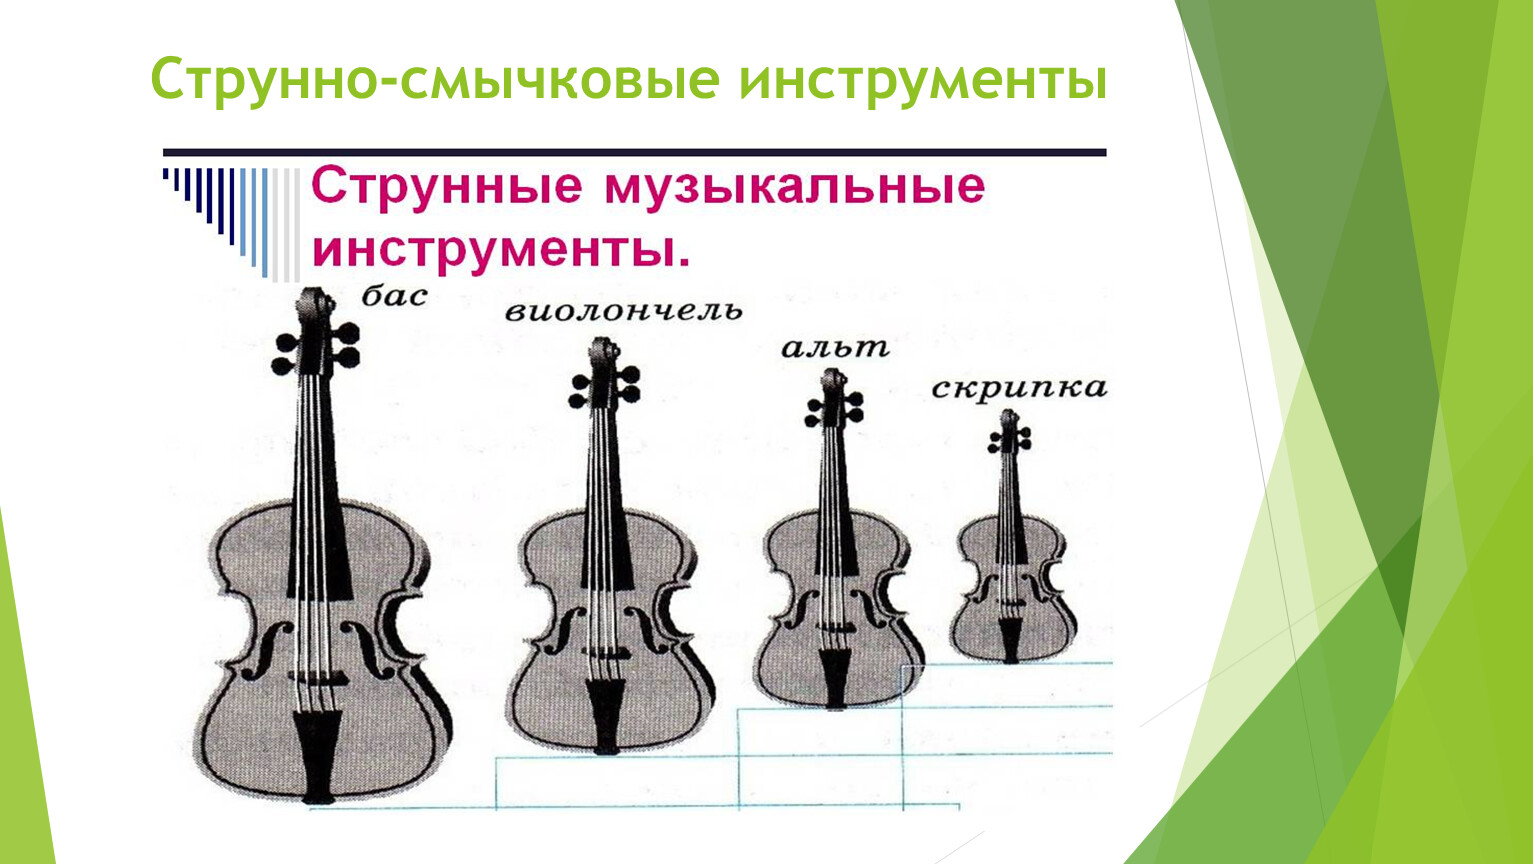 Струнно Щипковые инструменты симфонического оркестра